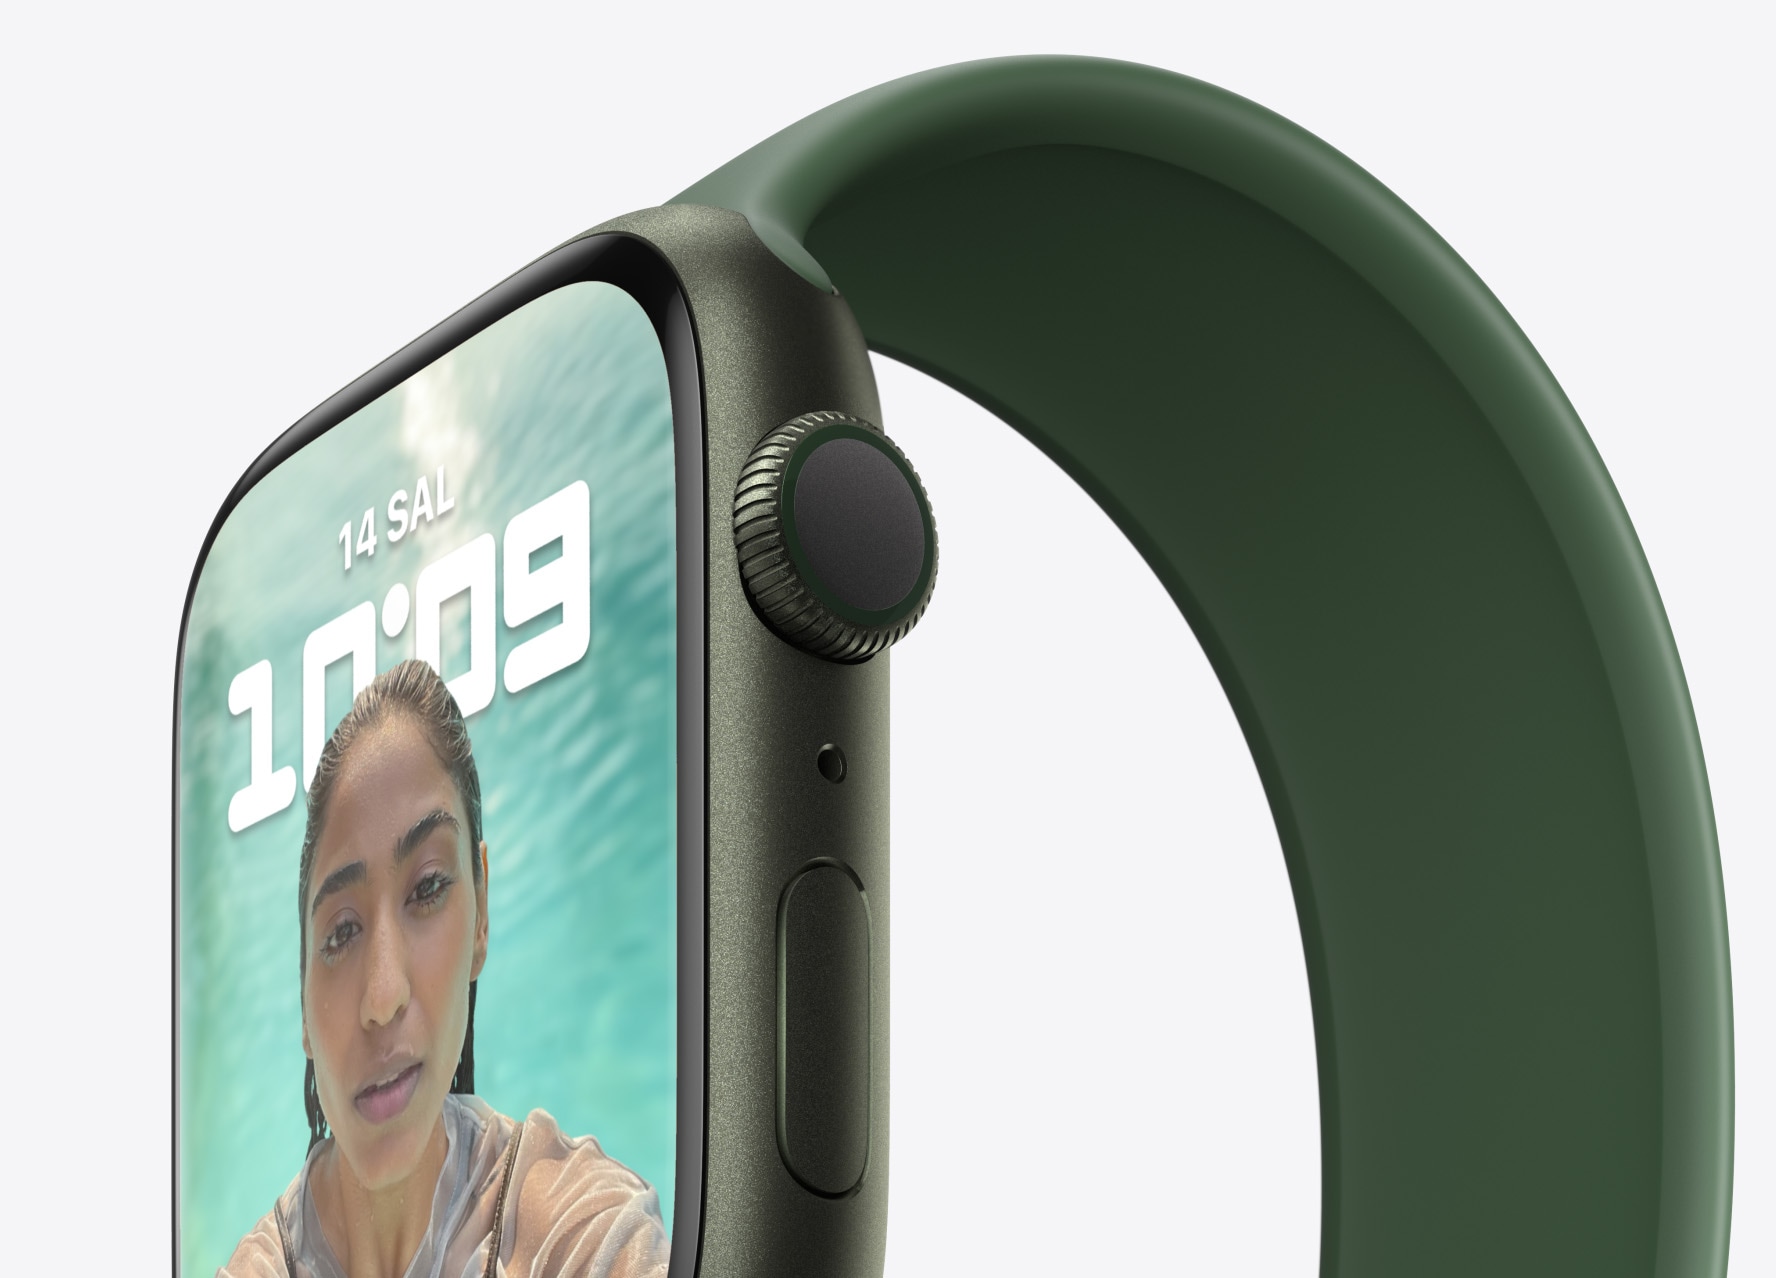 Daha büyük ekran, Apple Watch deneyimini bambaşka bir boyuta taşıyor. Şimdi saatinizi kullanmanız ve ekrandakileri okumanız çok daha kolay. Karşınızda Apple Watch Series 7. Bugüne kadarki en büyük ve en parlak fikrimiz.